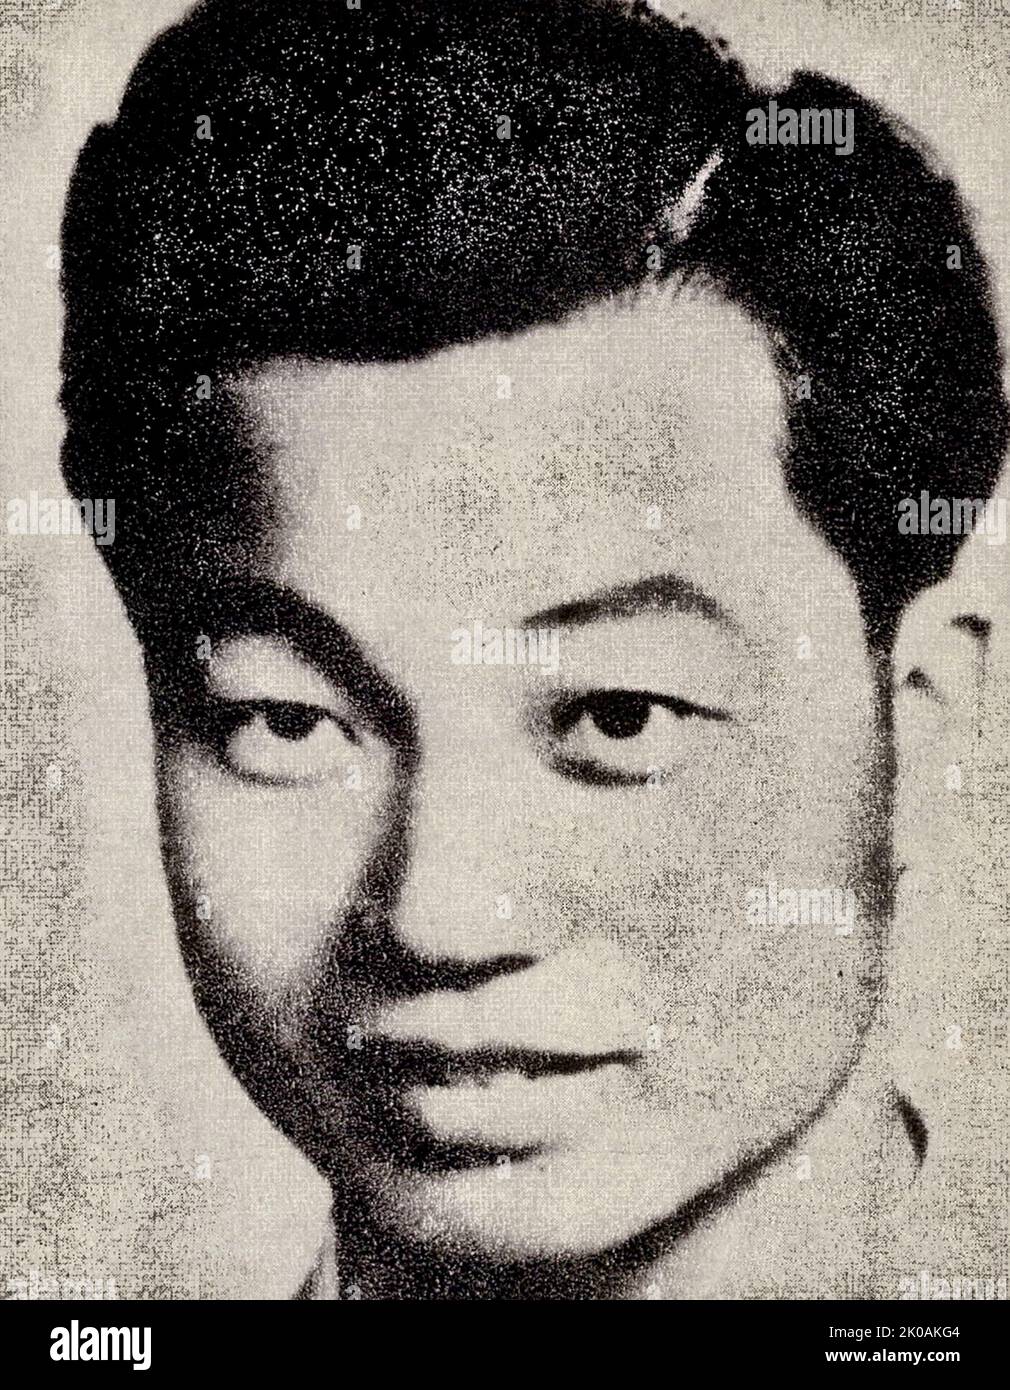 Qian Wenxiang (1924-1949), membre du Parti communiste chinois, du comté de Sheng dans la province de Zhejiang. Il était une police du département de police de Shanghai, et activement engagé dans des luttes secrètes. Il a été arrêté sur 13 mai en 1949 et a traversé des tortures, tout en protégeant son parti et ses collègues. Il a été tué avec ses collègues Qian Fengqi, Liu Jiadong, et Jiang Zhiyi, et a été appelé collectivement les "quatre Martyrs de police". Banque D'Images